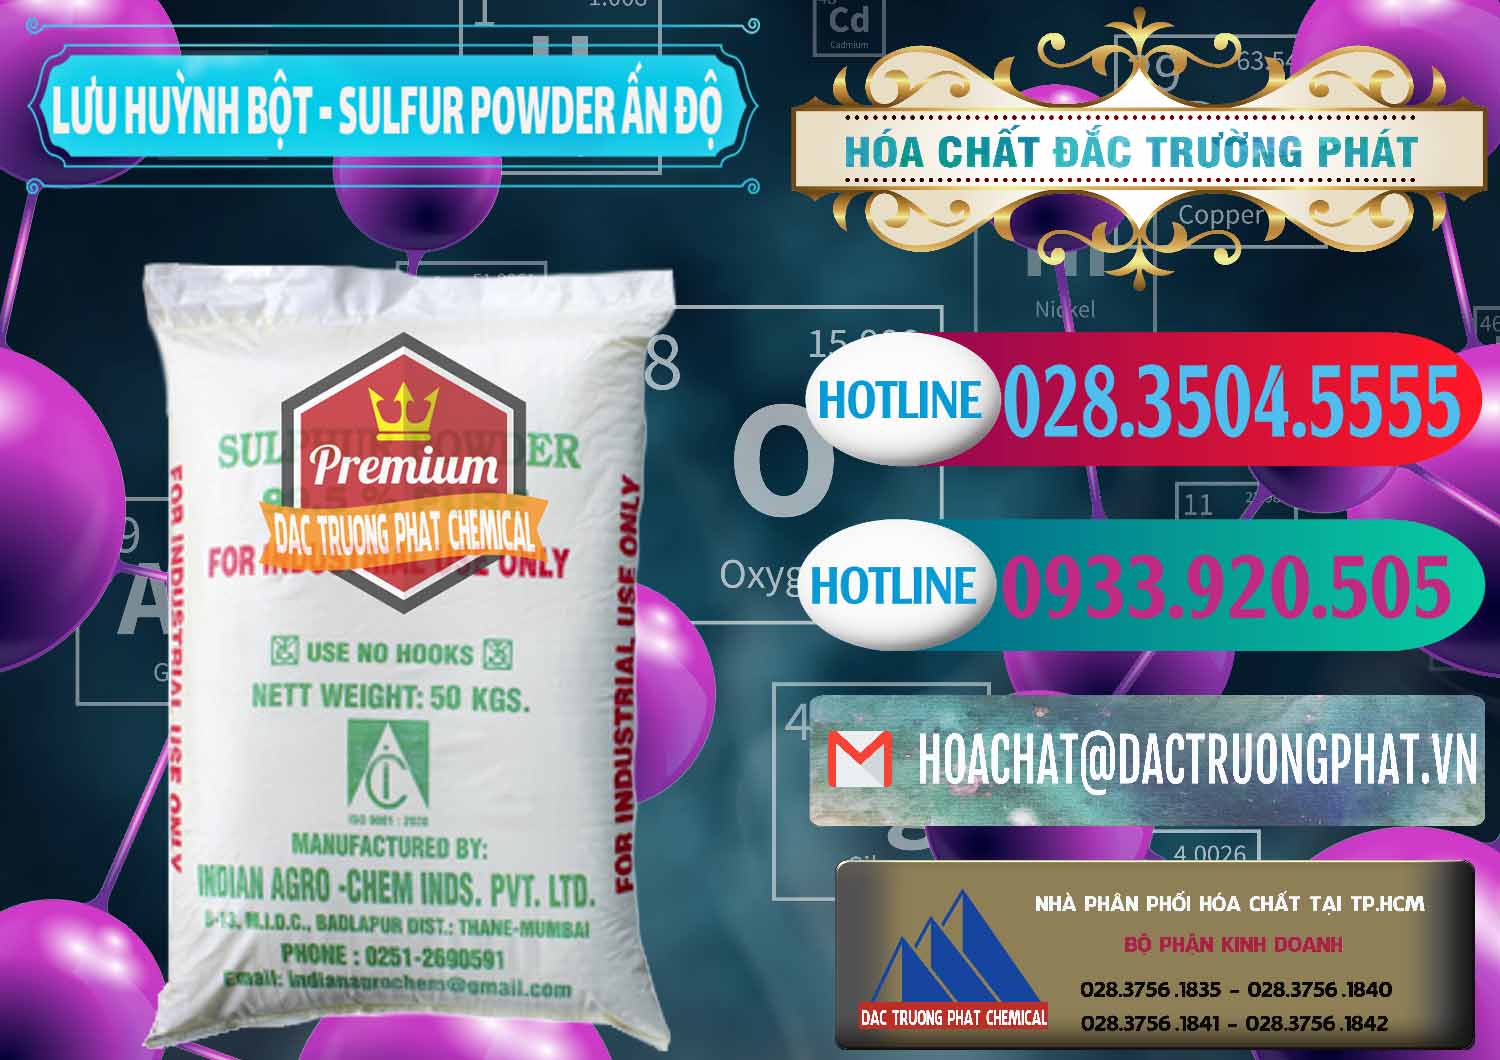 Nơi chuyên bán - cung cấp Lưu huỳnh Bột - Sulfur Powder Ấn Độ India - 0347 - Chuyên cung cấp ( kinh doanh ) hóa chất tại TP.HCM - truongphat.vn